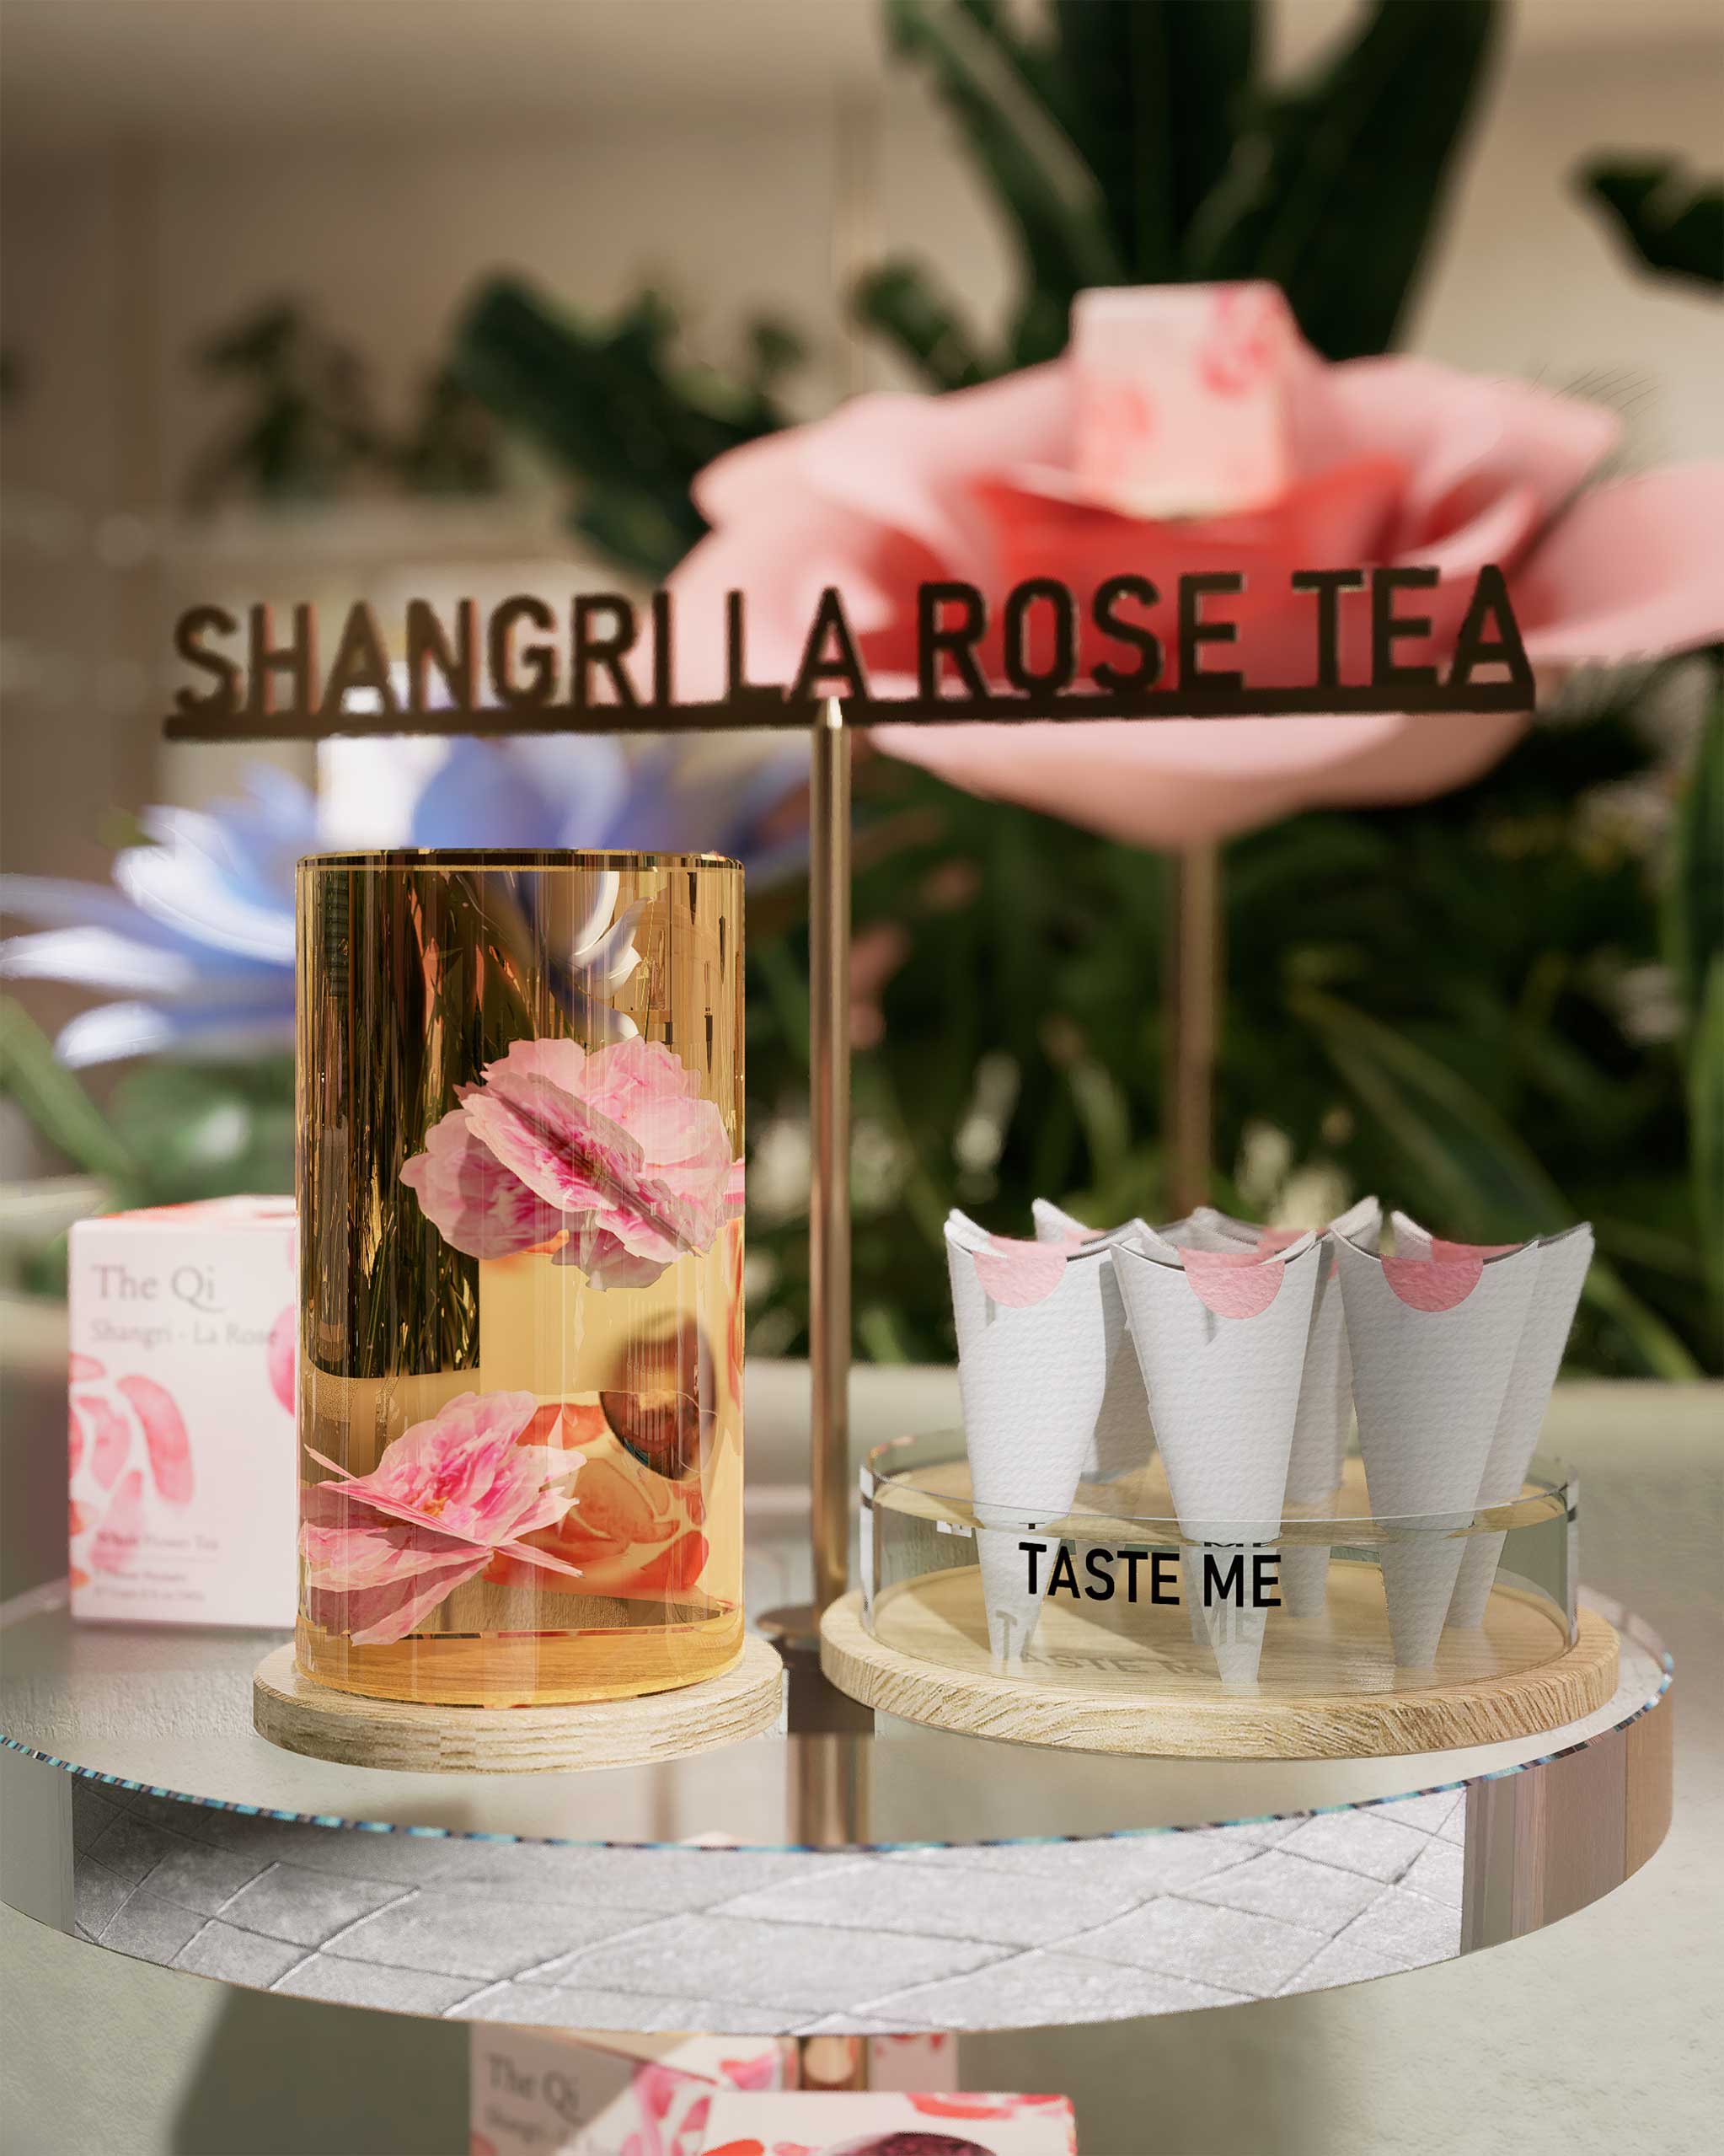 Expérience sensorielle et poétique de découverte du thé floral à la rose Shangri La